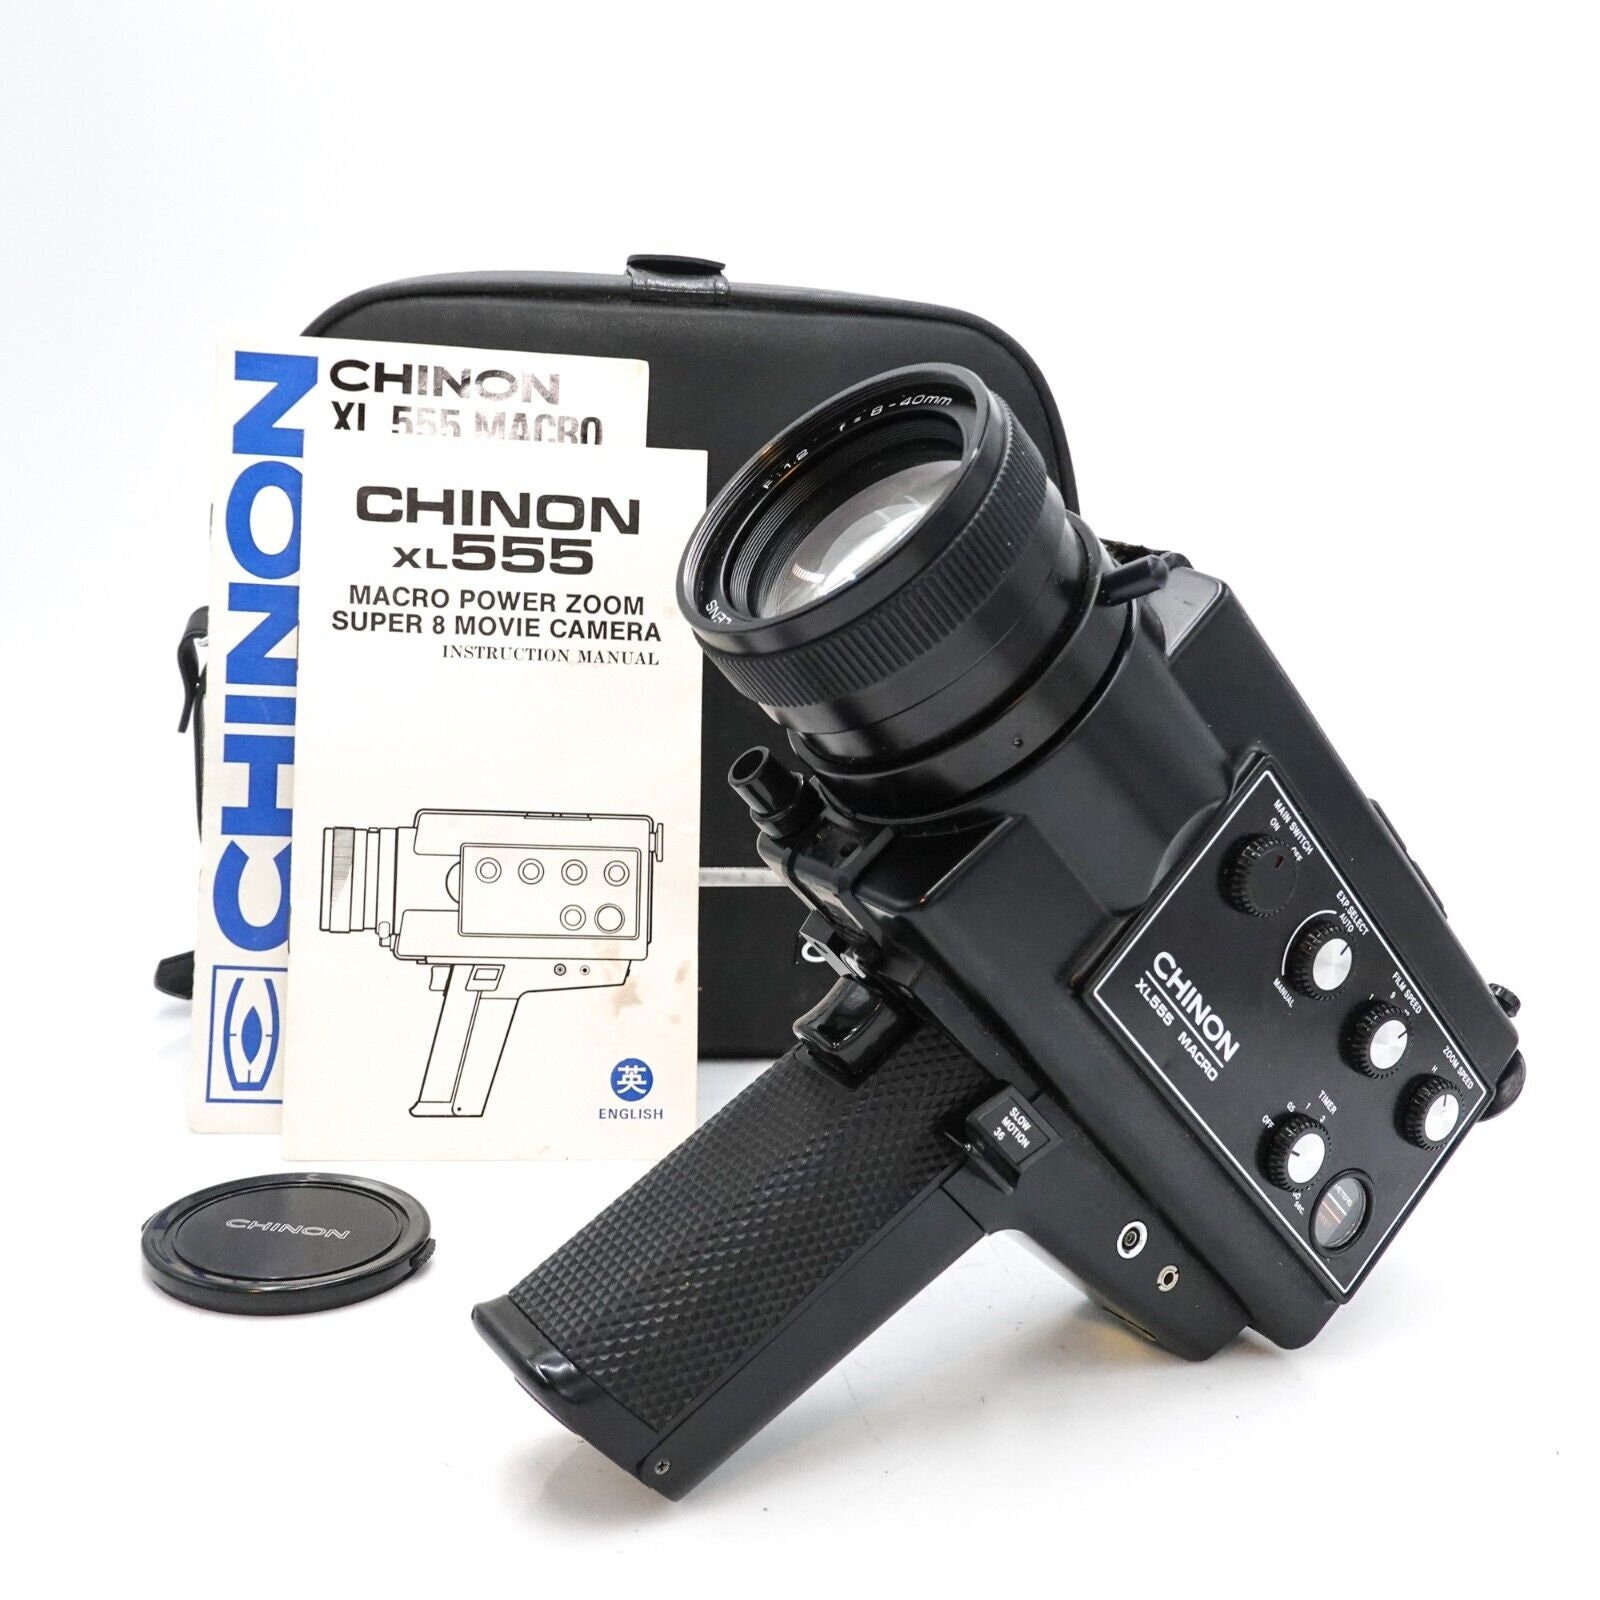 Chinon xl555 macro super 8 cine film camera & case - working - s8-7840